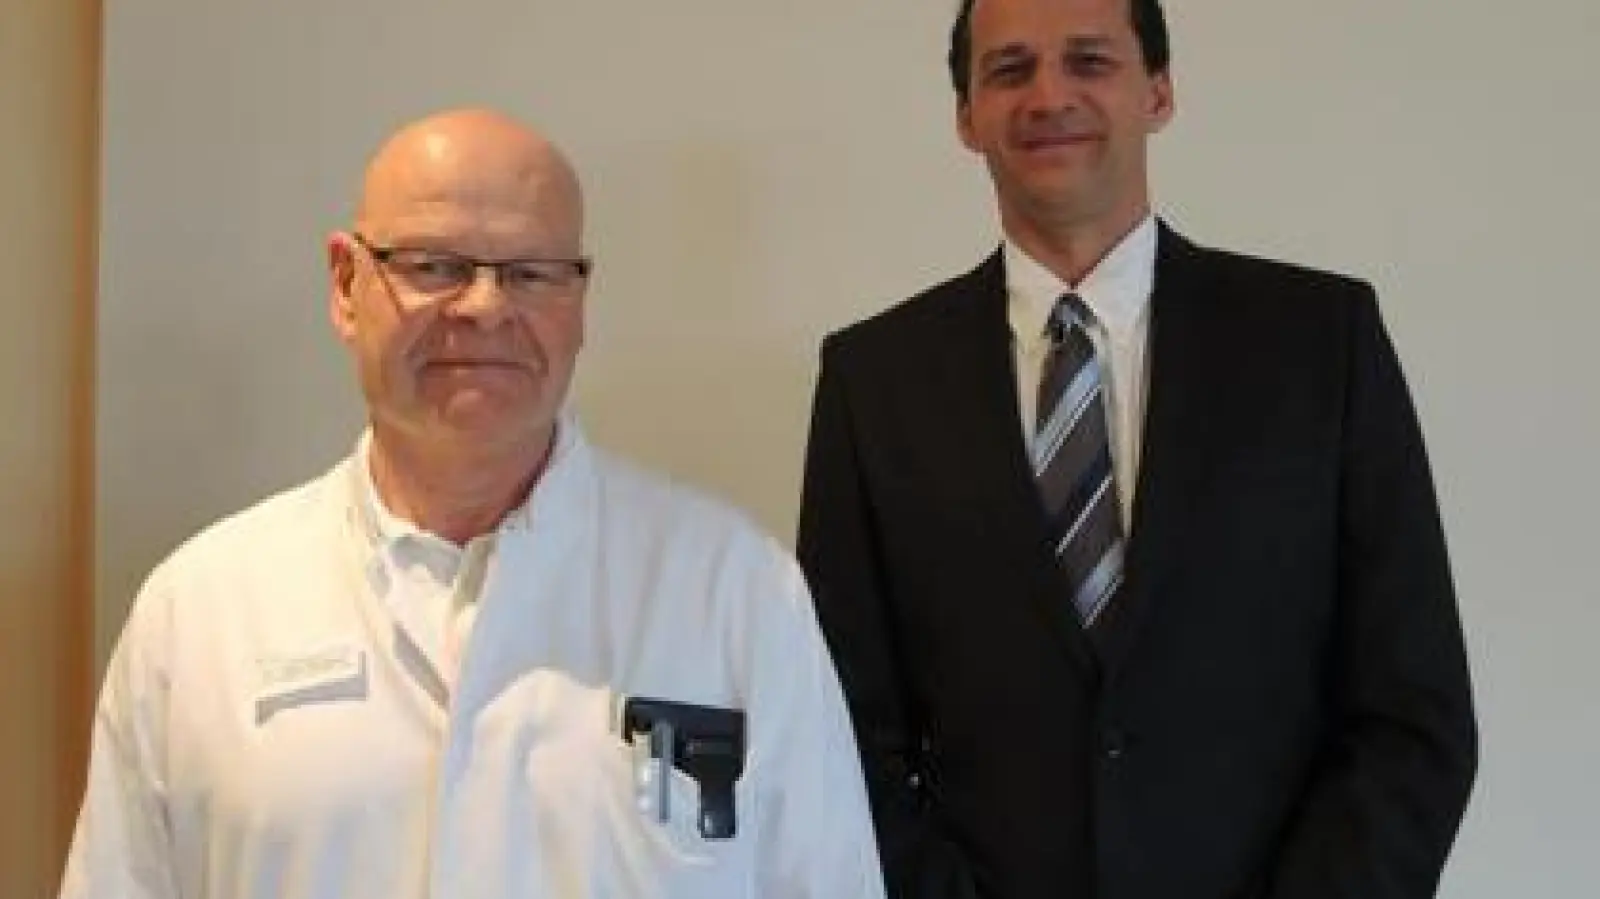 Der bisherige Chefarzt  Dr. Lothar Goedecke (links) verlässt die Kliniken an der Paar. Sein Nachfolger wird Peter Beer.  	Foto: cal (Foto: cal)